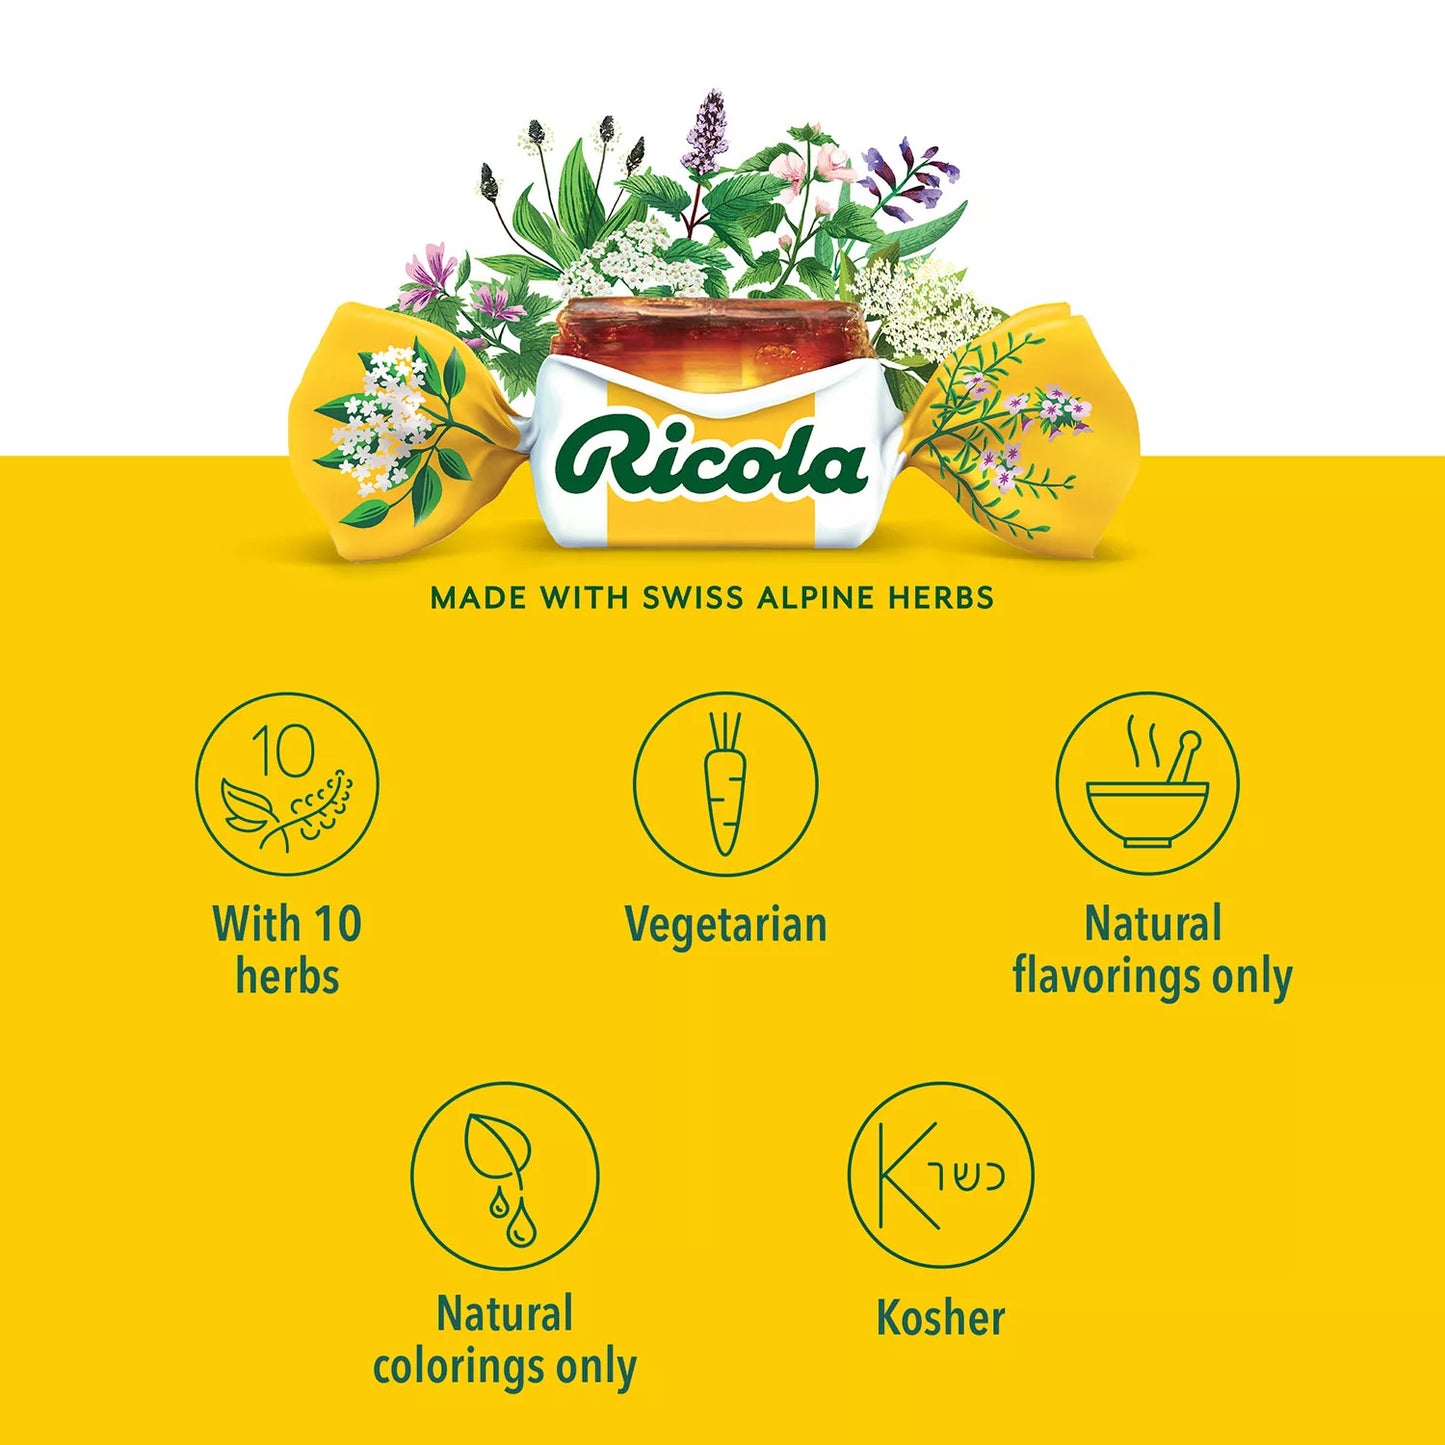 Ricola Original Natural Herb Cough Drops (2 pk., 115 ct./pk.)